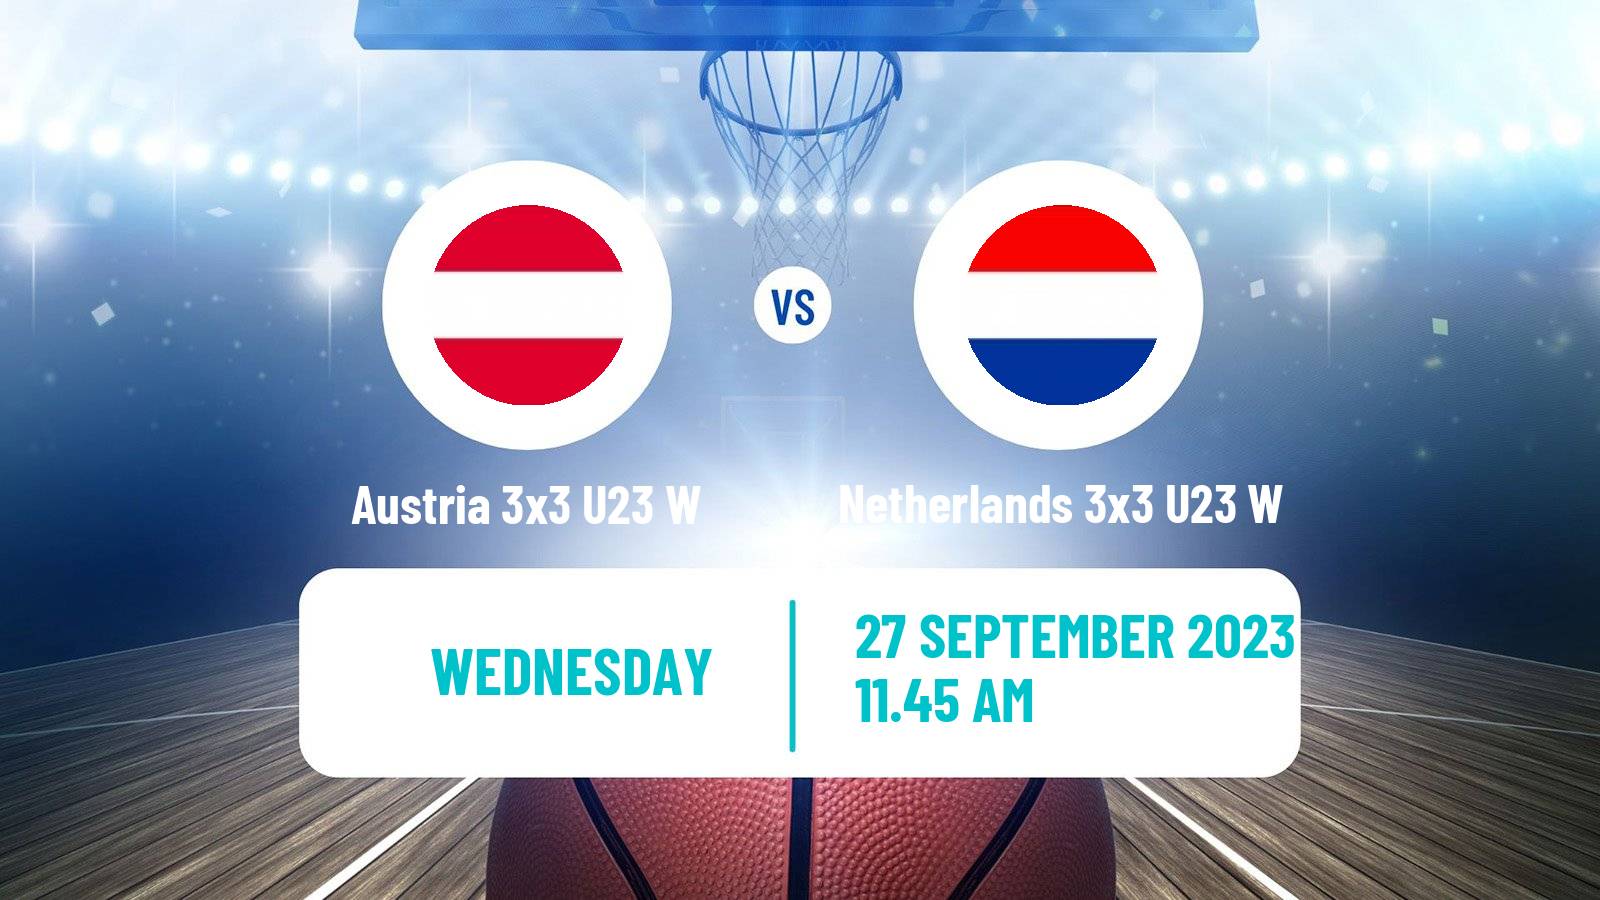 Basketball World Cup Basketball 3x3 U23 Women Austria 3x3 U23 W - Netherlands 3x3 U23 W